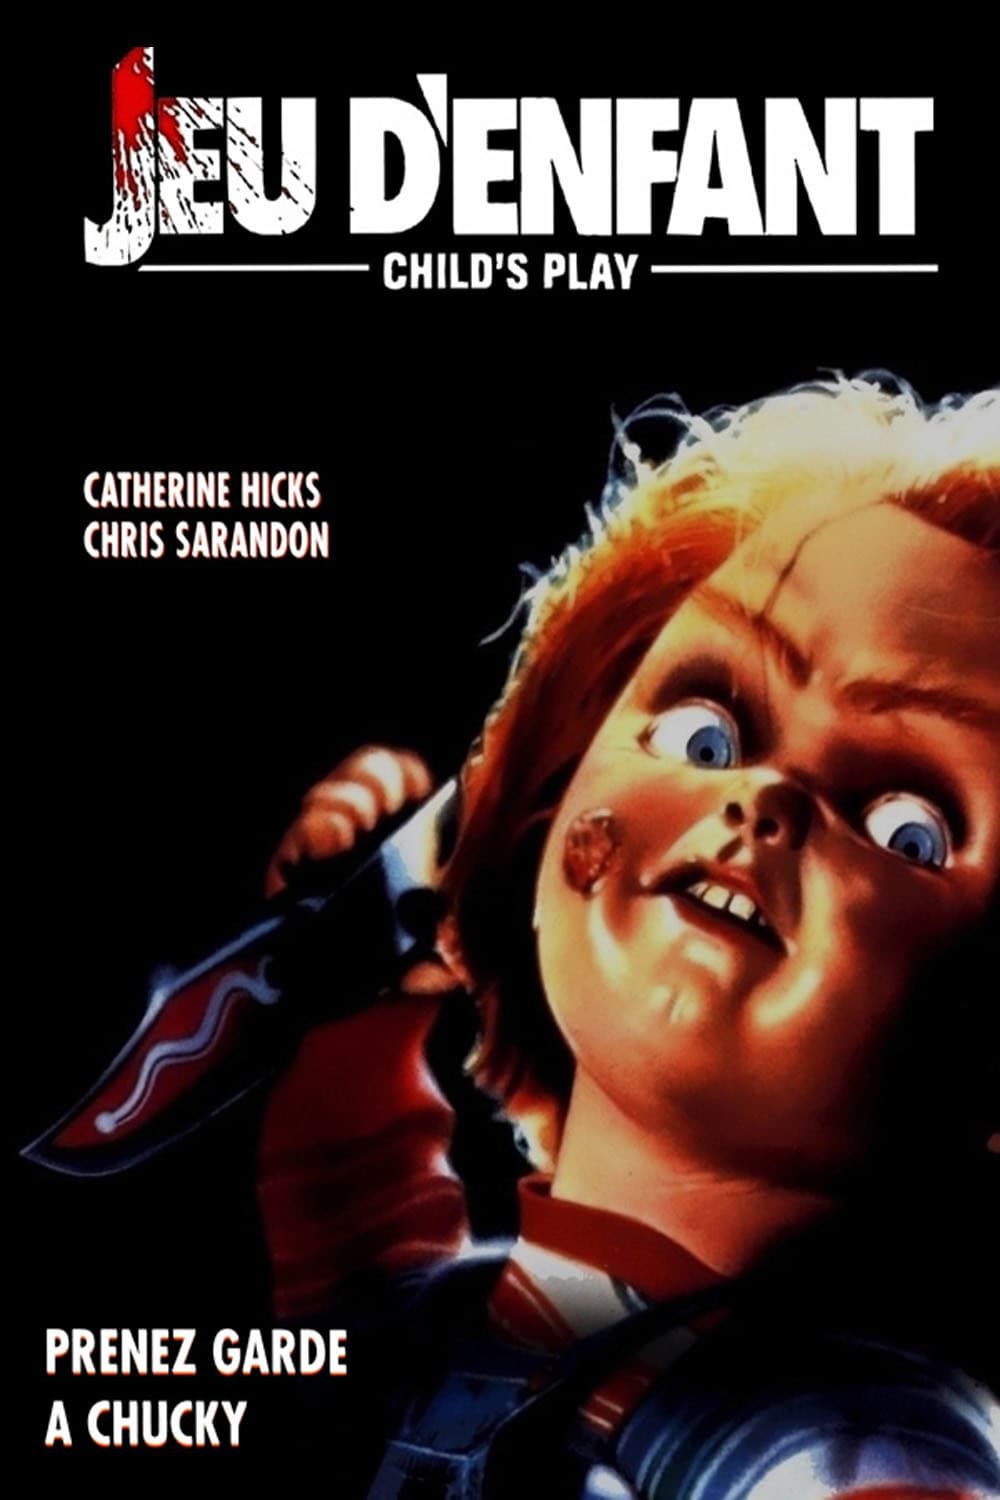 La saga Chucky : les films de la poupée serial killer, liste de 8 films